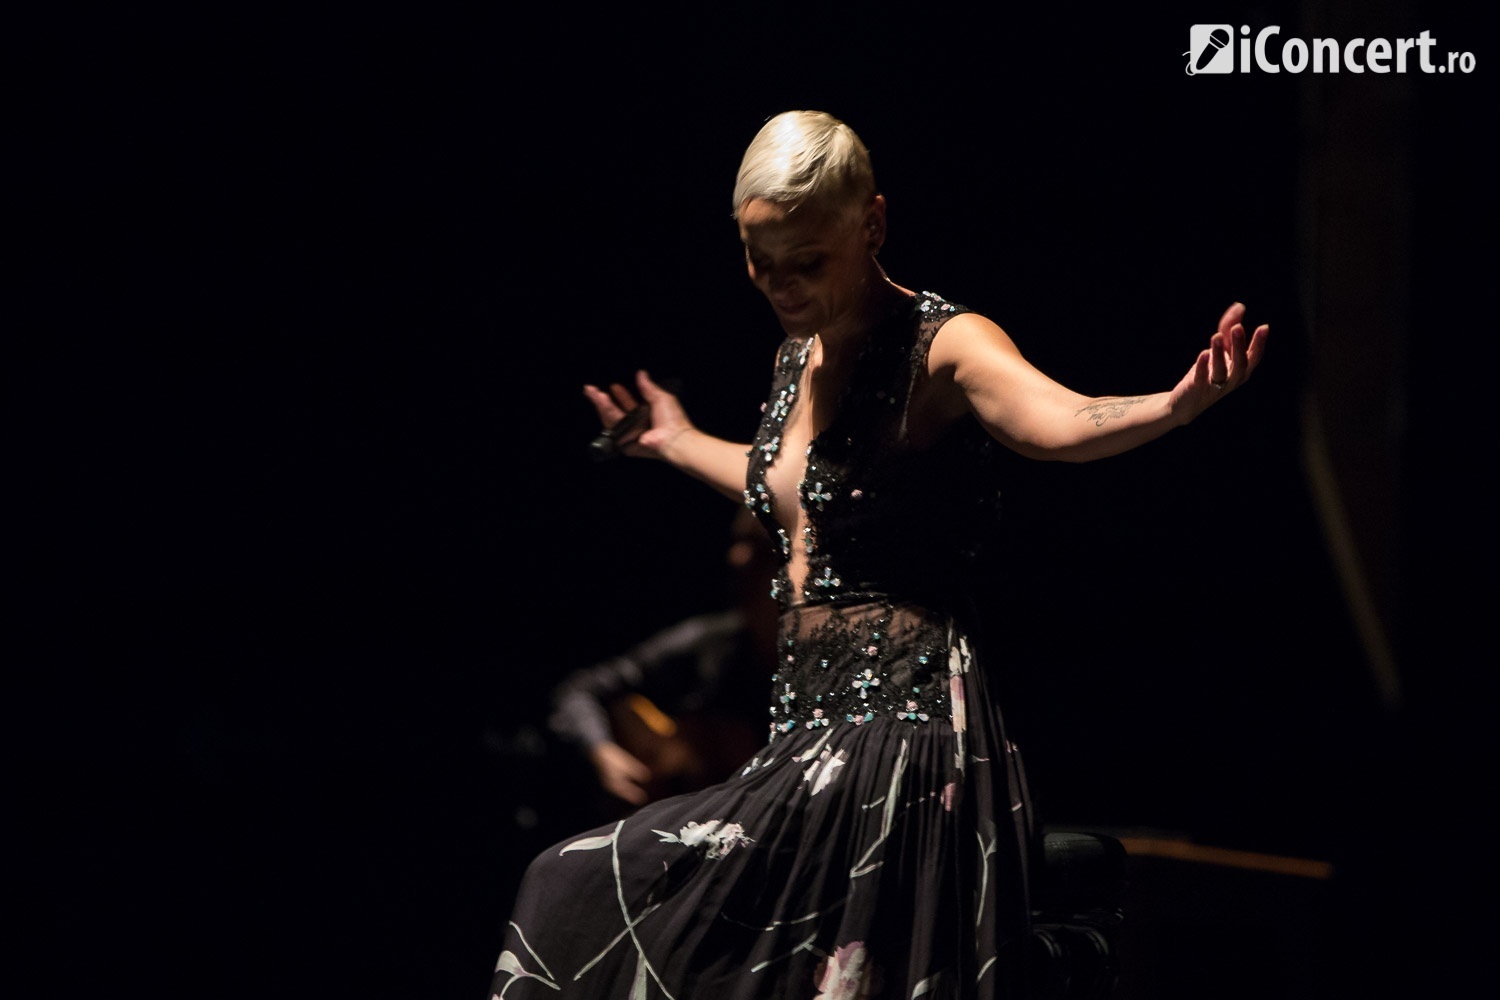 Mariza în concert la Sala Palatului din Bucureşti - Foto: Daniel Robert Dinu / iConcert.ro